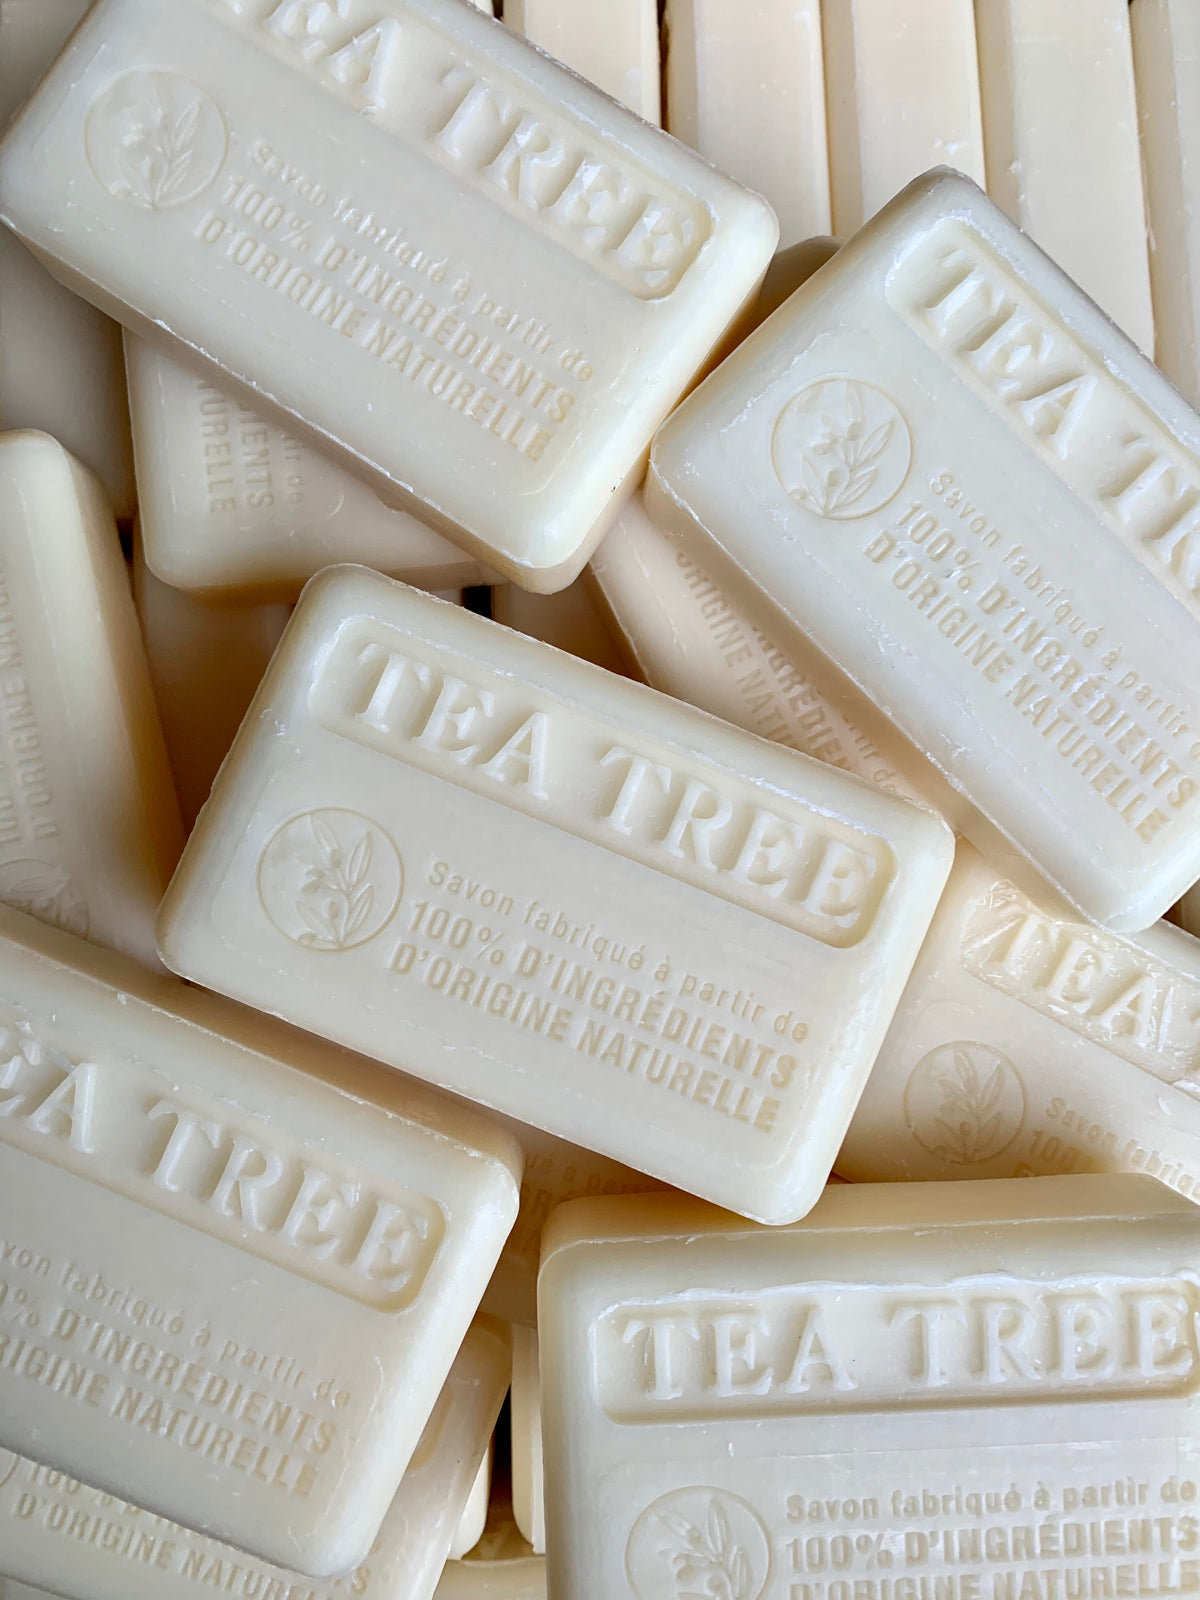 Natural french tea tree soap bar